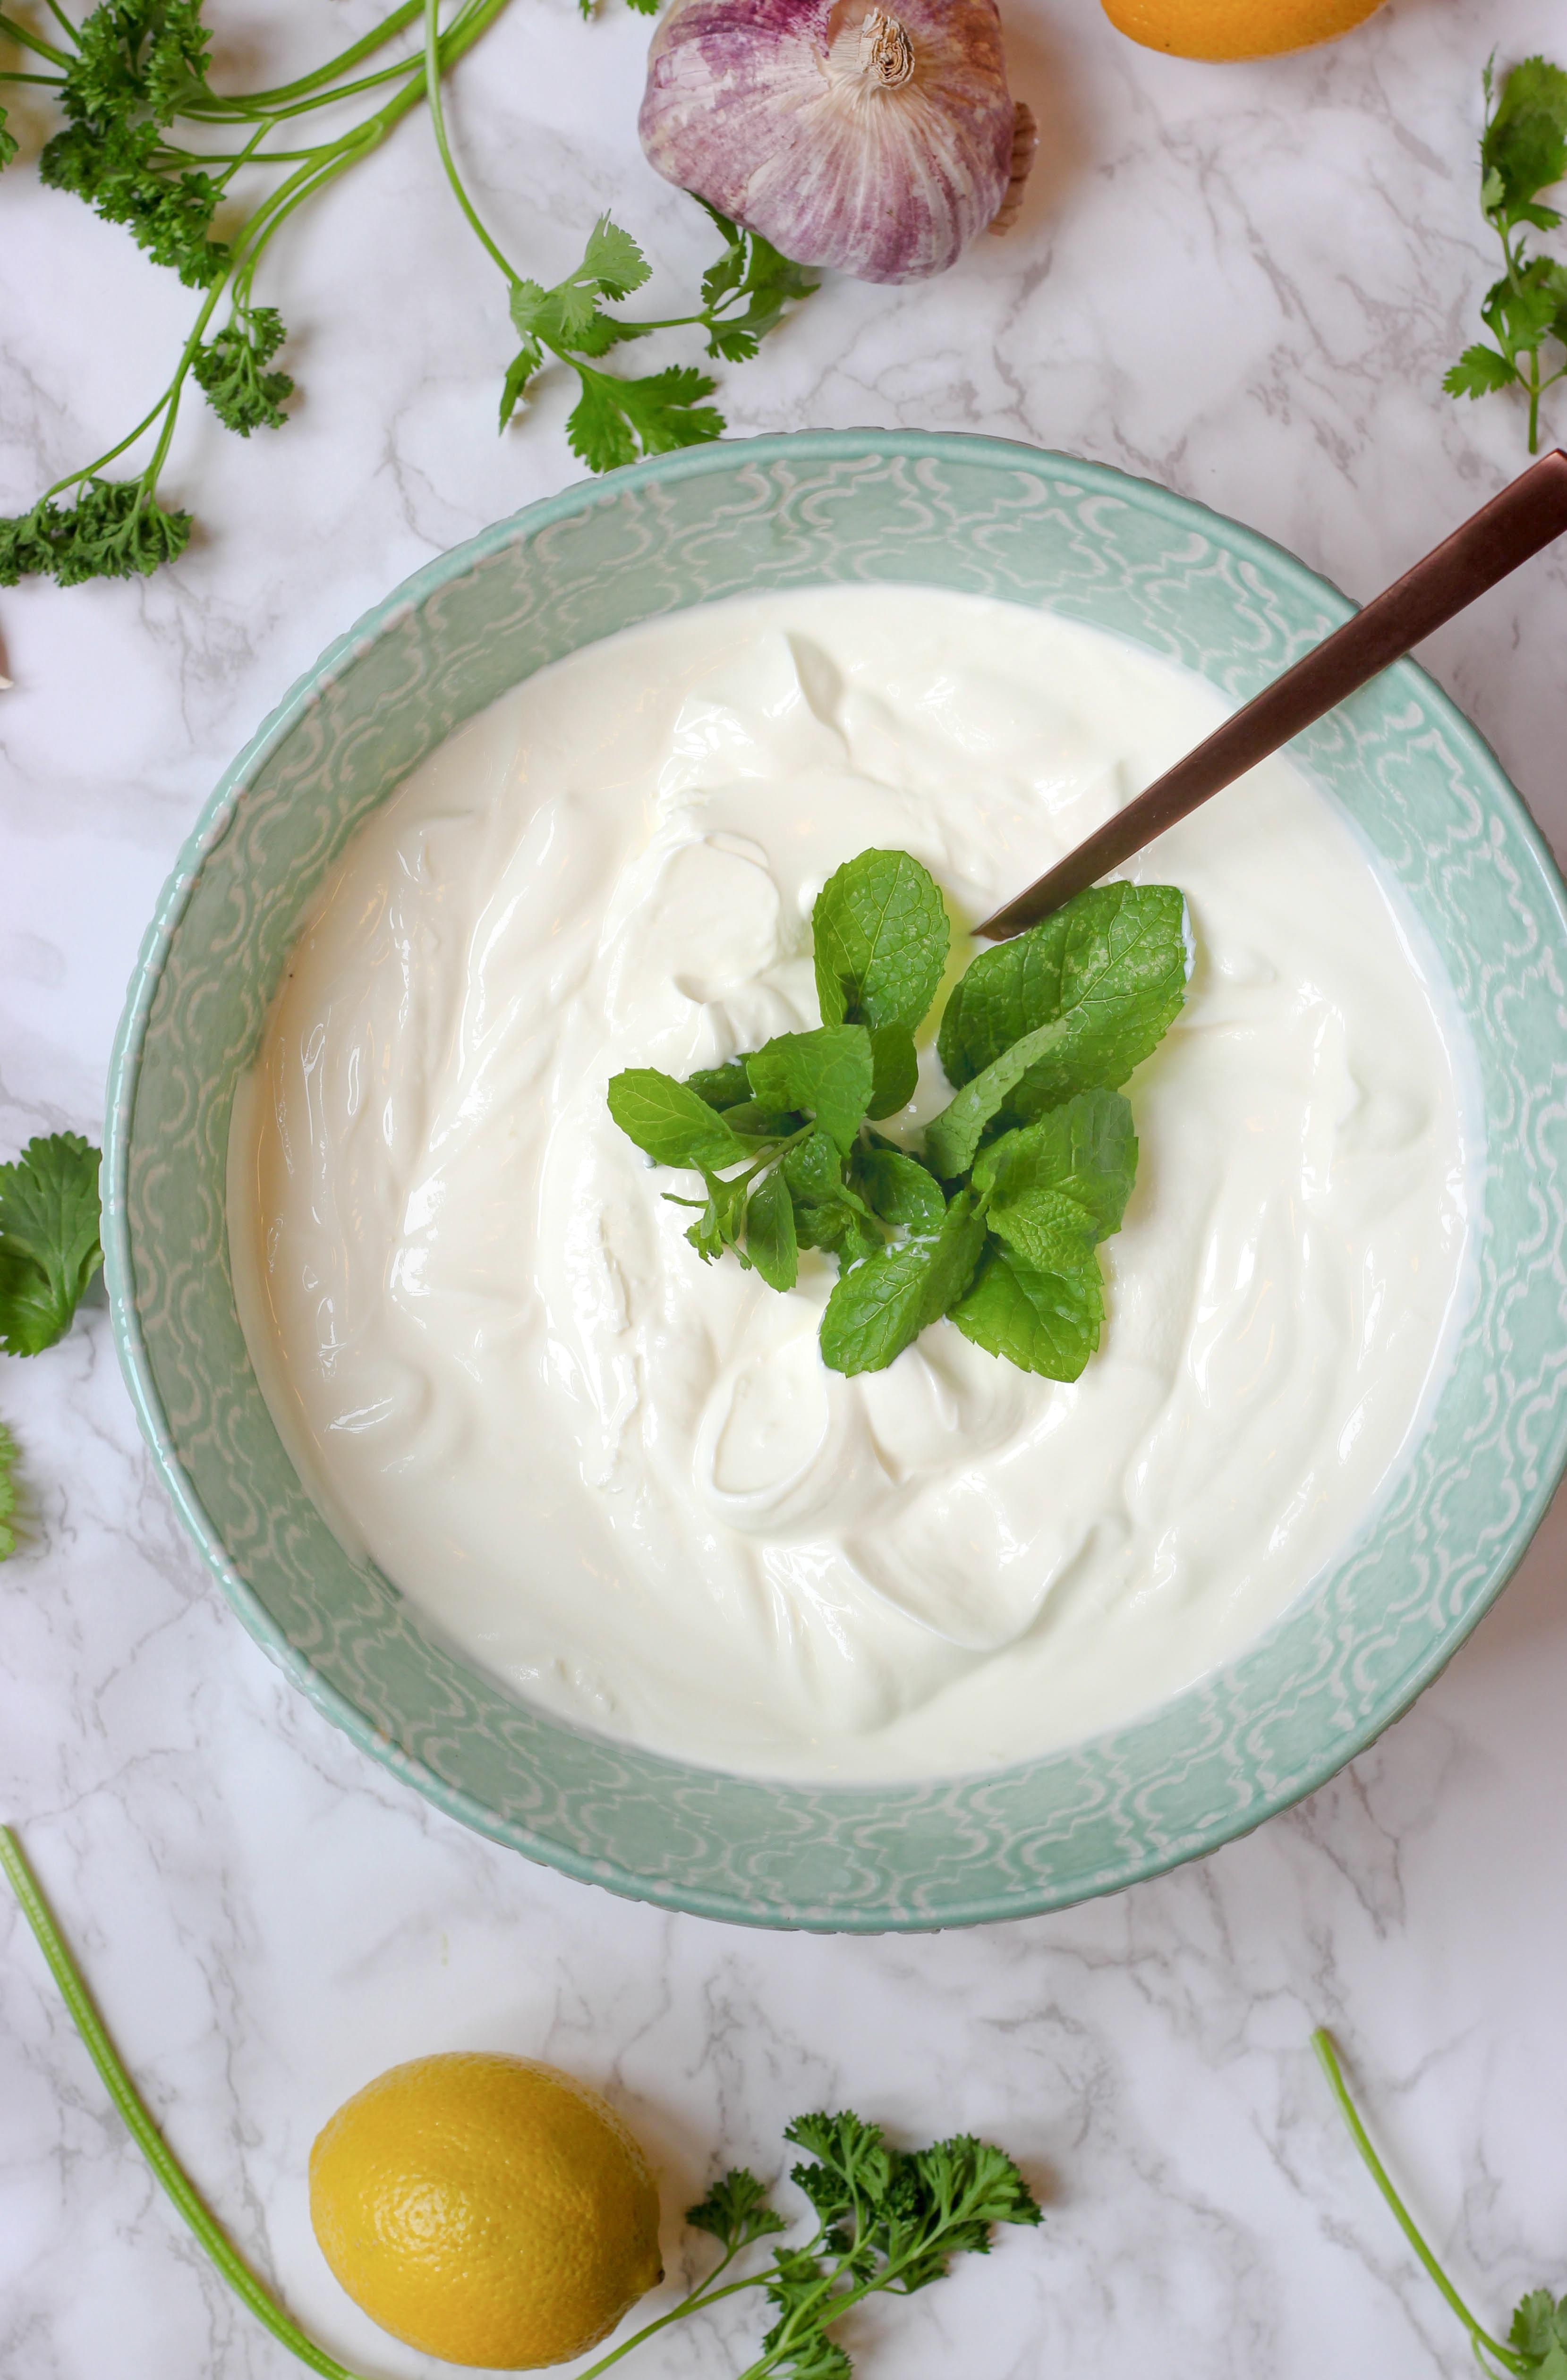 Jogurt grecki - czym się różni od jogurtu naturalnego? Właściwości zdrowotne. Na czym polega różnica pomiędzy jogurtem naturalnym a jogurtem typu greckiego? Jogurt grecki – dlaczego warto włączyć go do diety? 